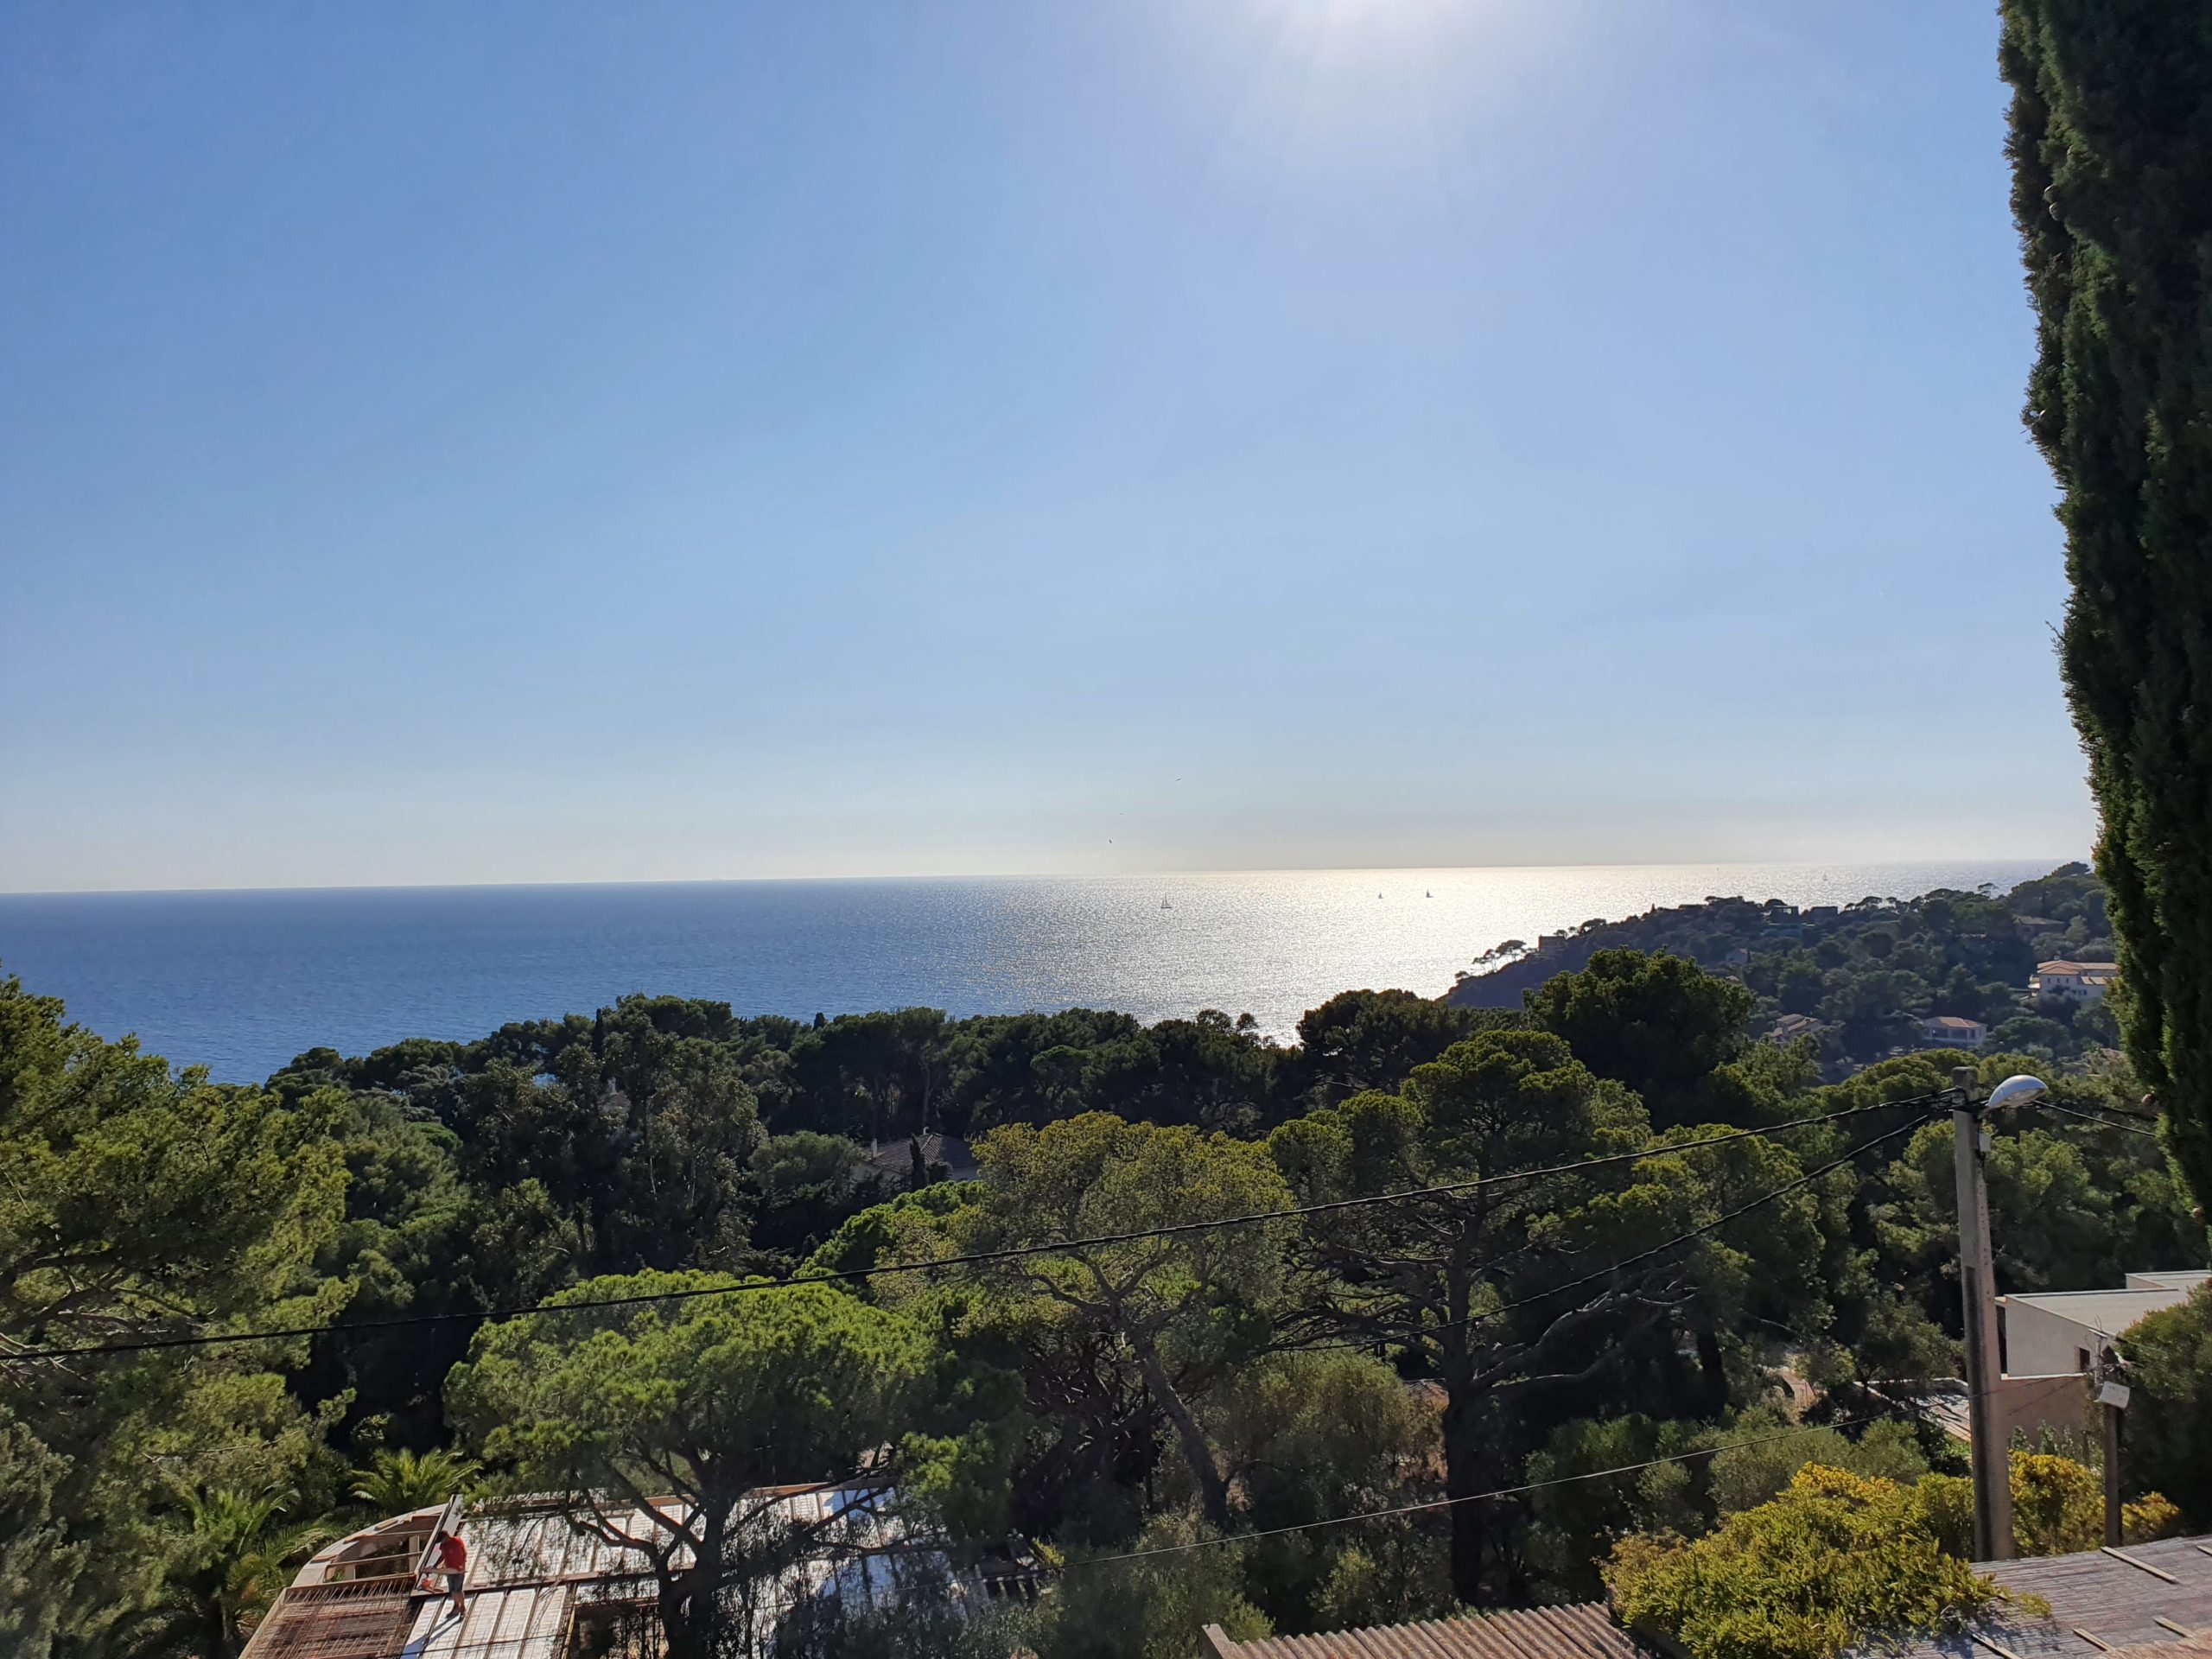 Panoramique en contre jour face à la mer méditerranée